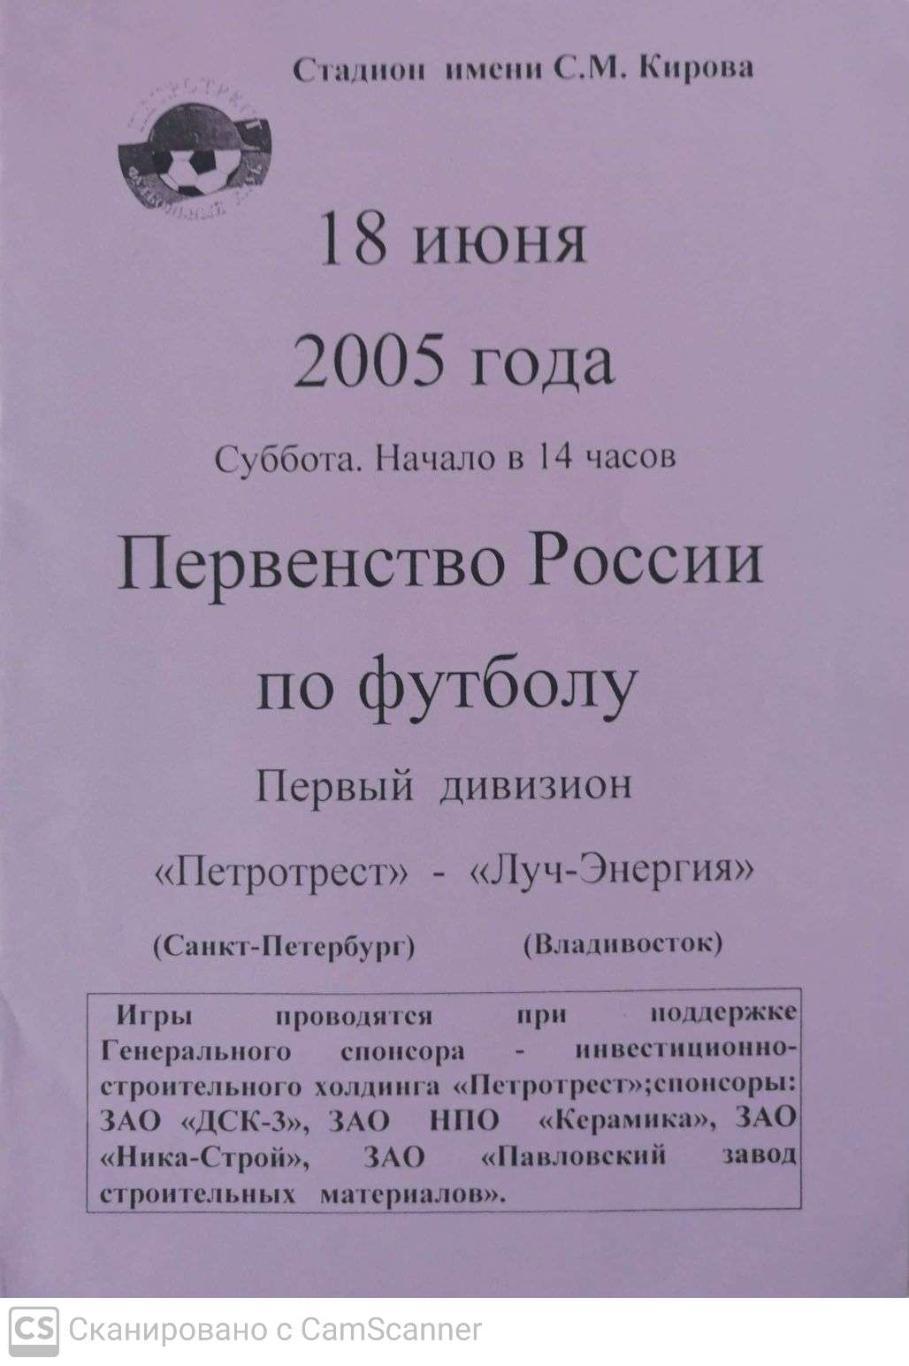 Первый дивизион. Петротрест СПб - Луч-Энергия 18.06.2005